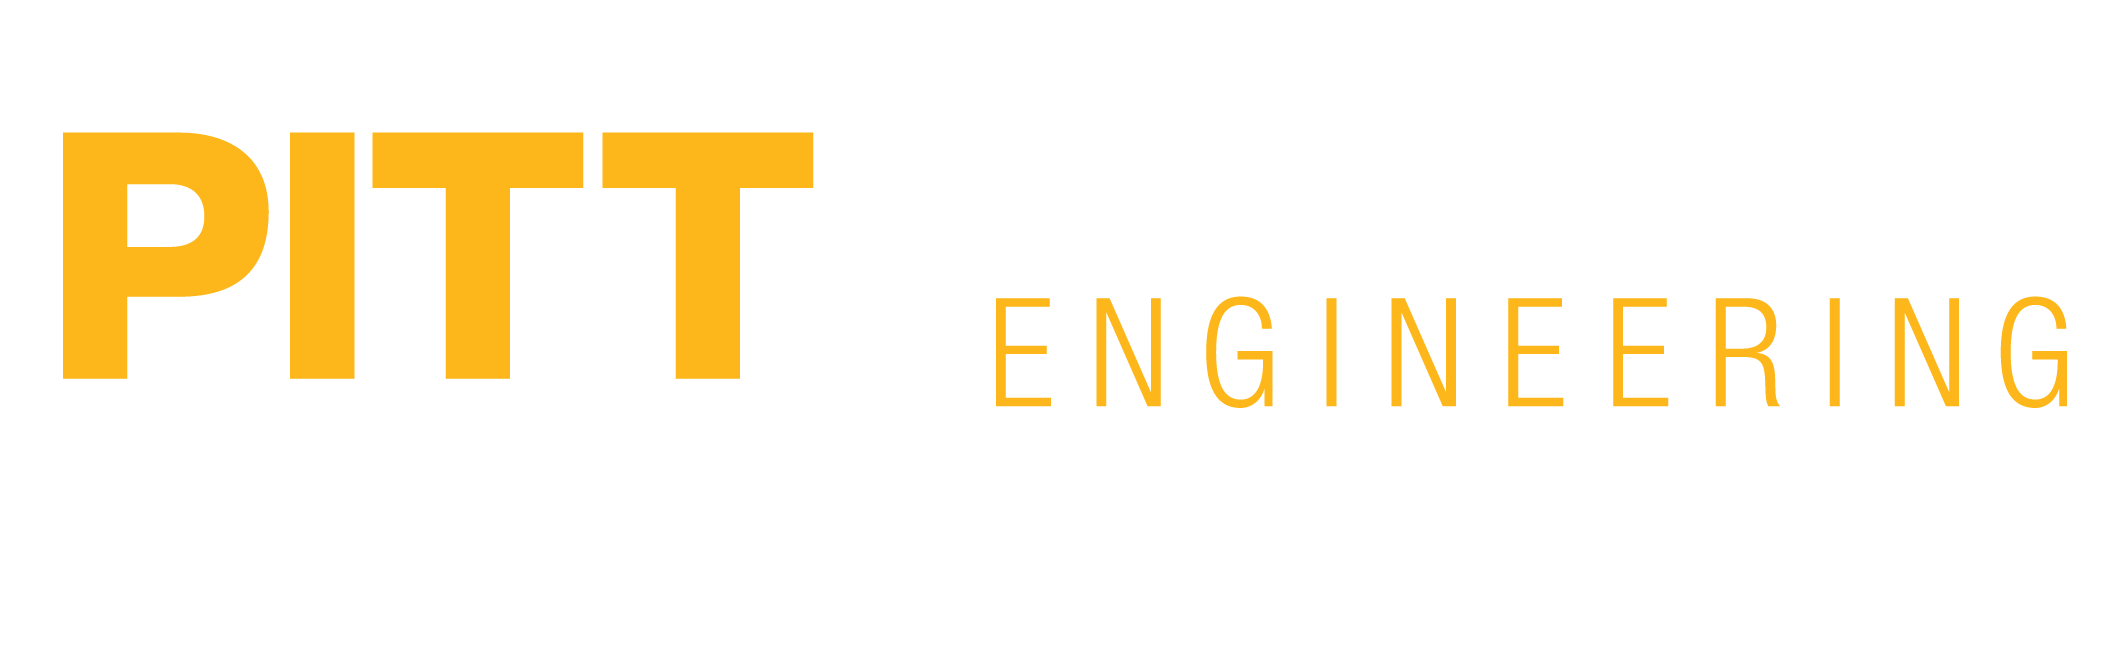 Pitt swanson engineering bio-engineering logo